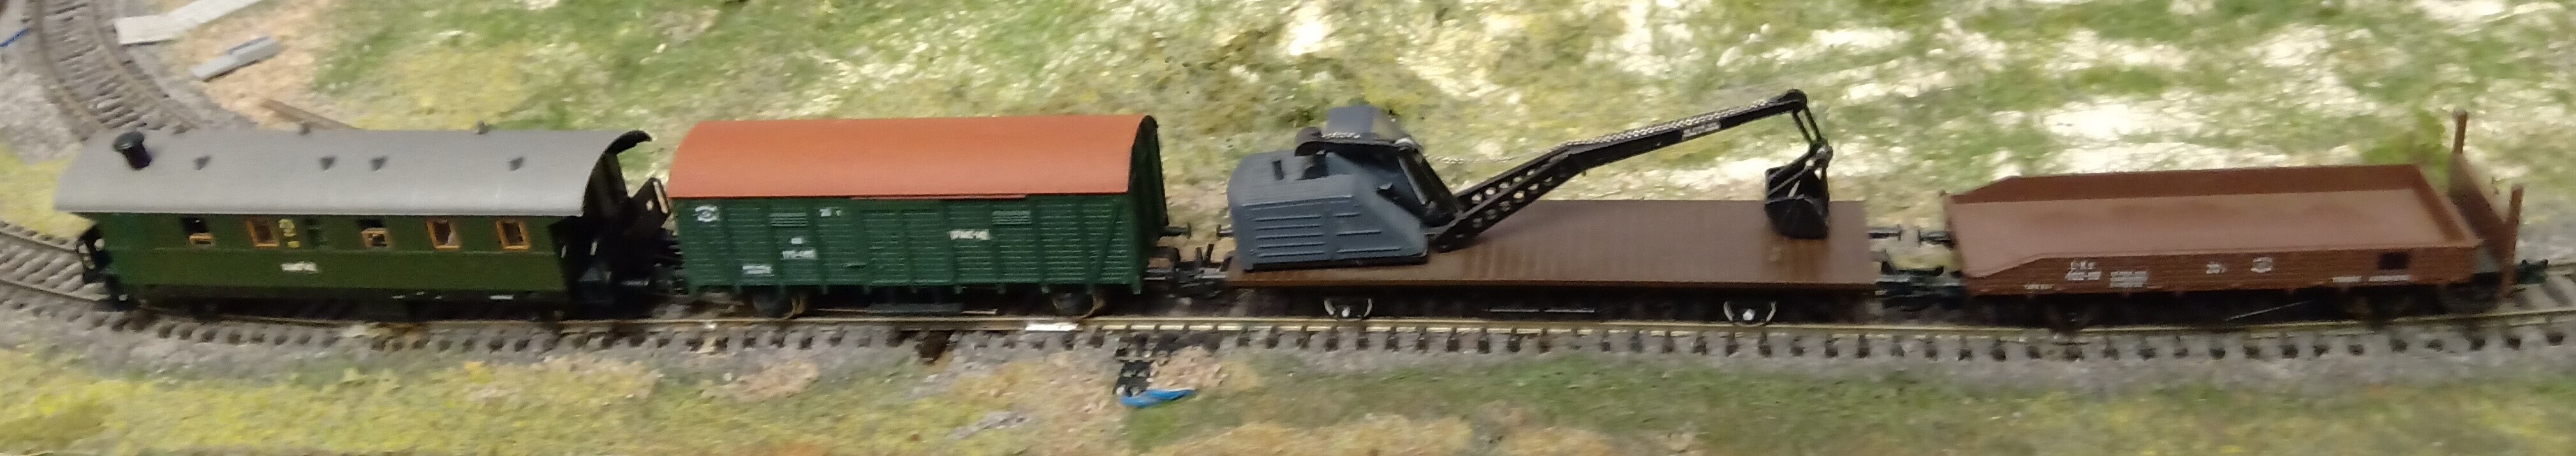 Модель хозяйственного поезда